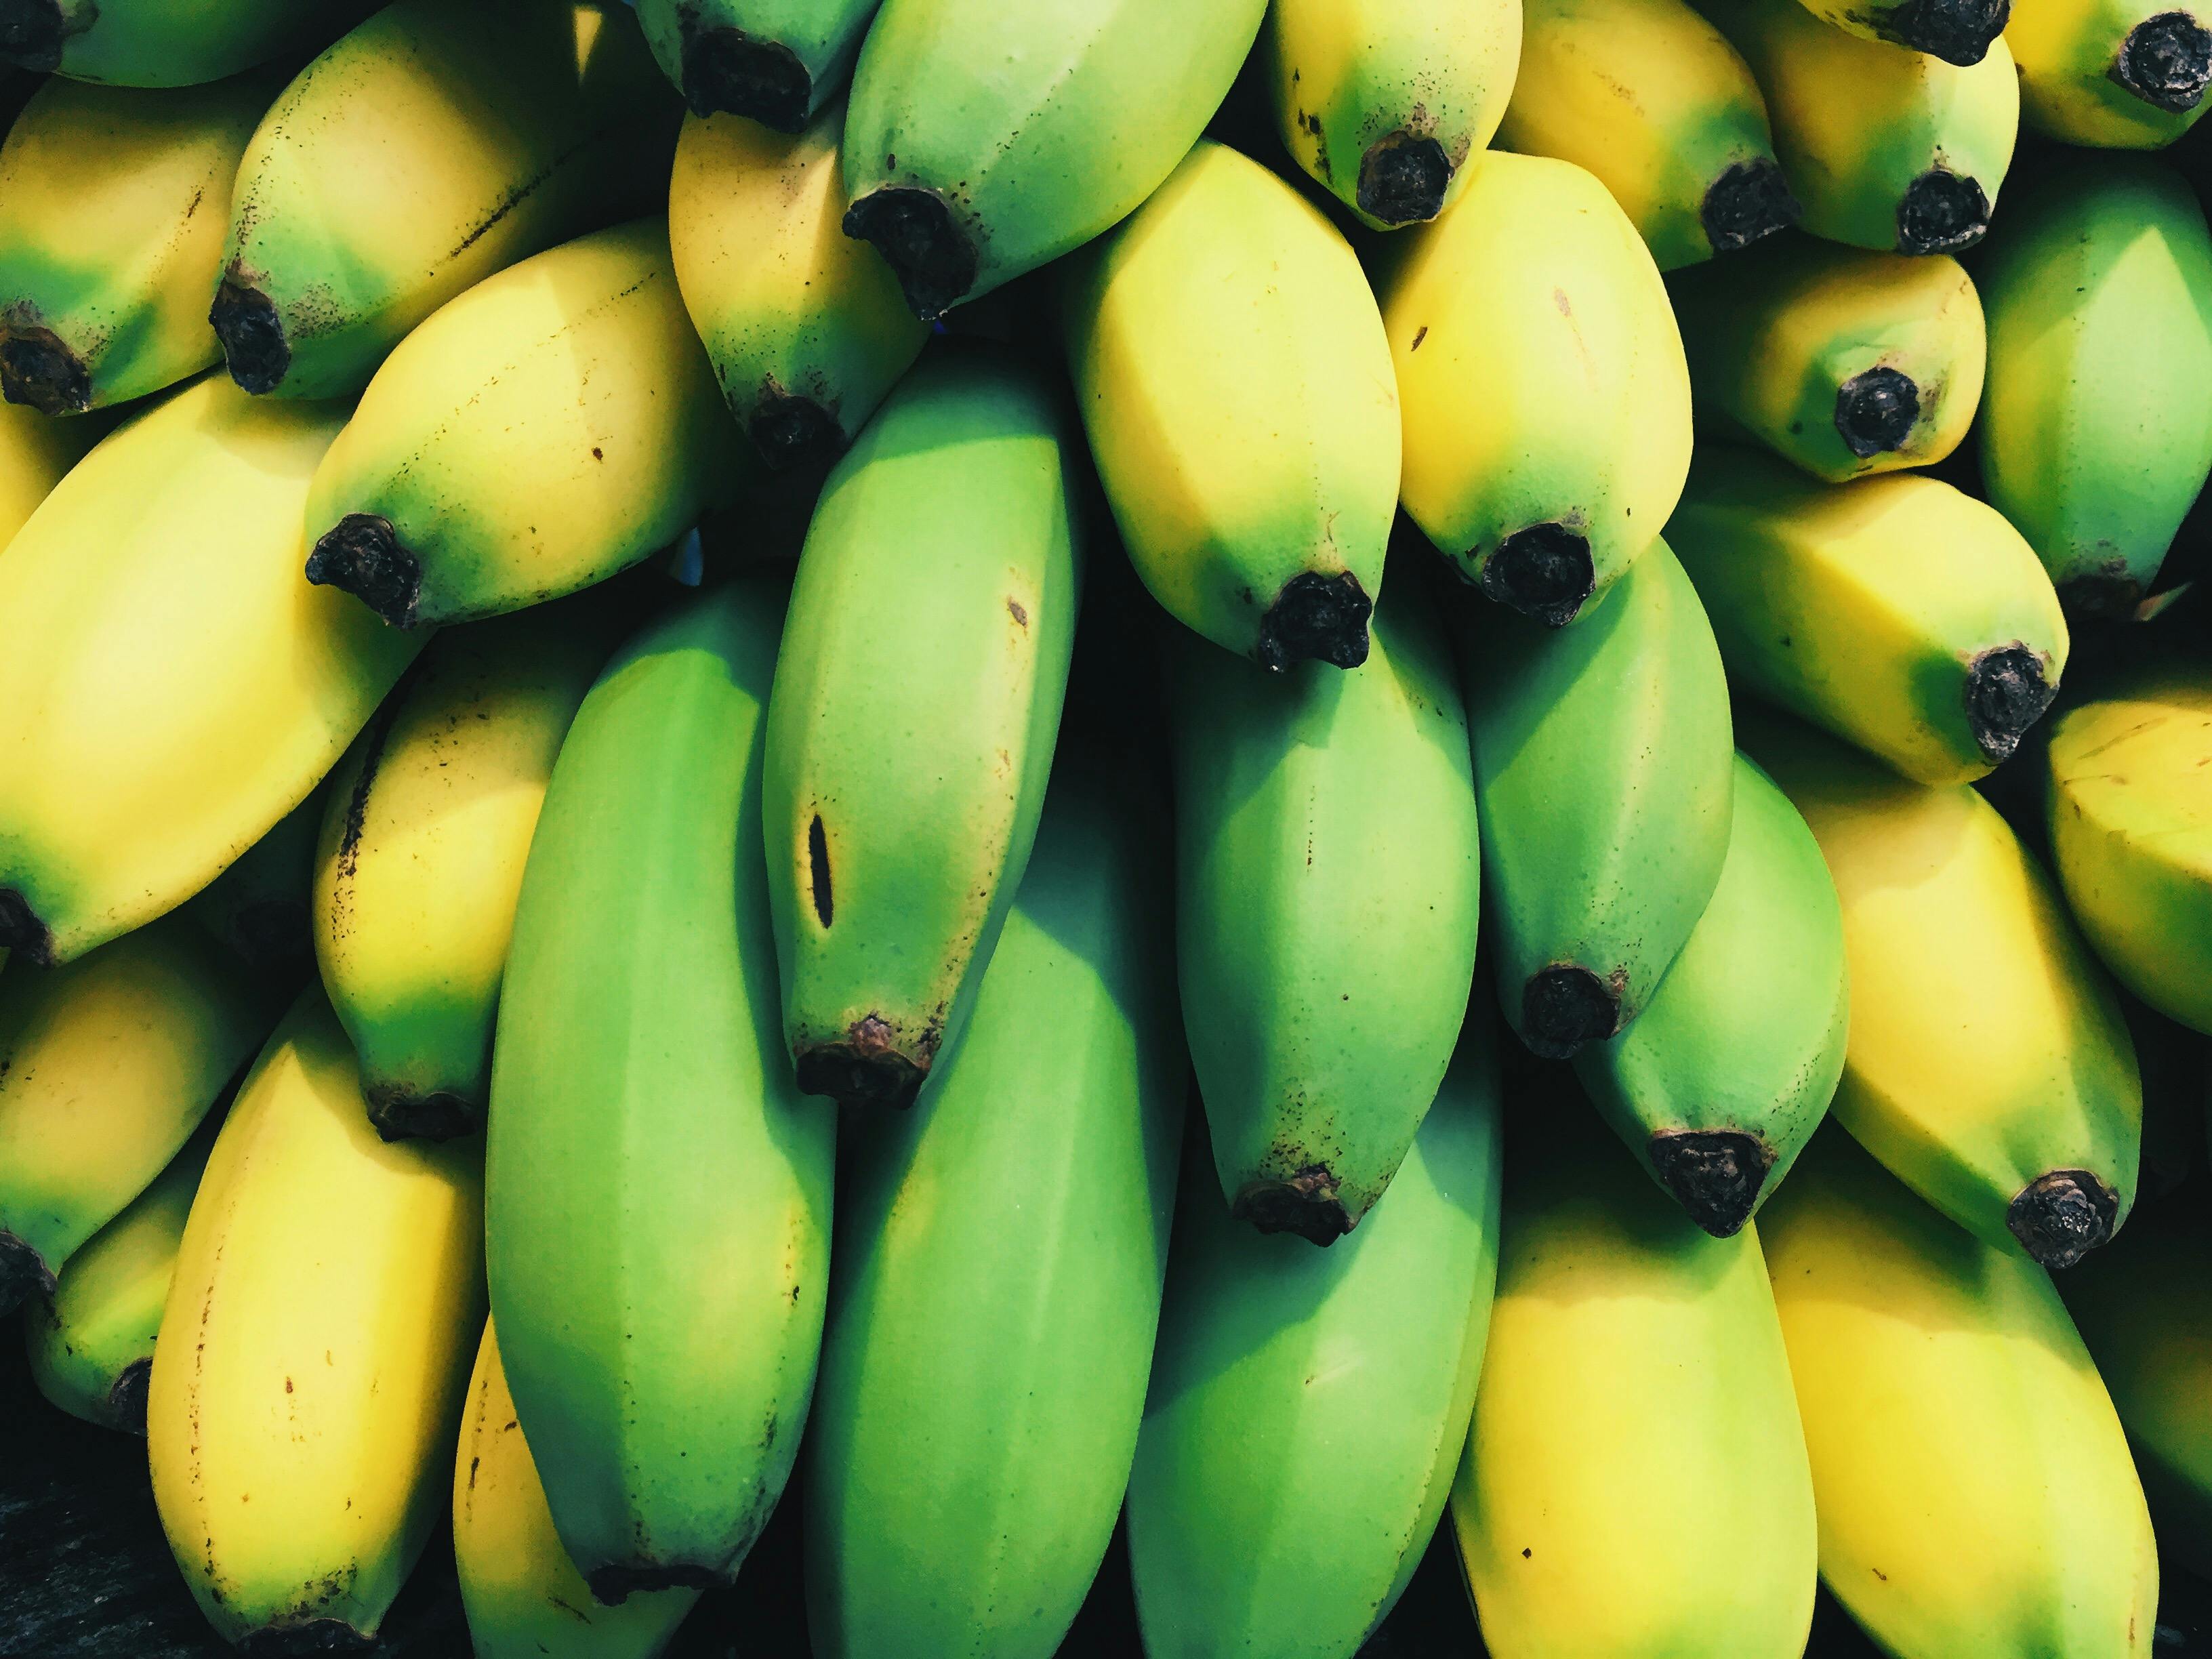 Kostenloses Foto zum Thema: bananen, essen, früchte